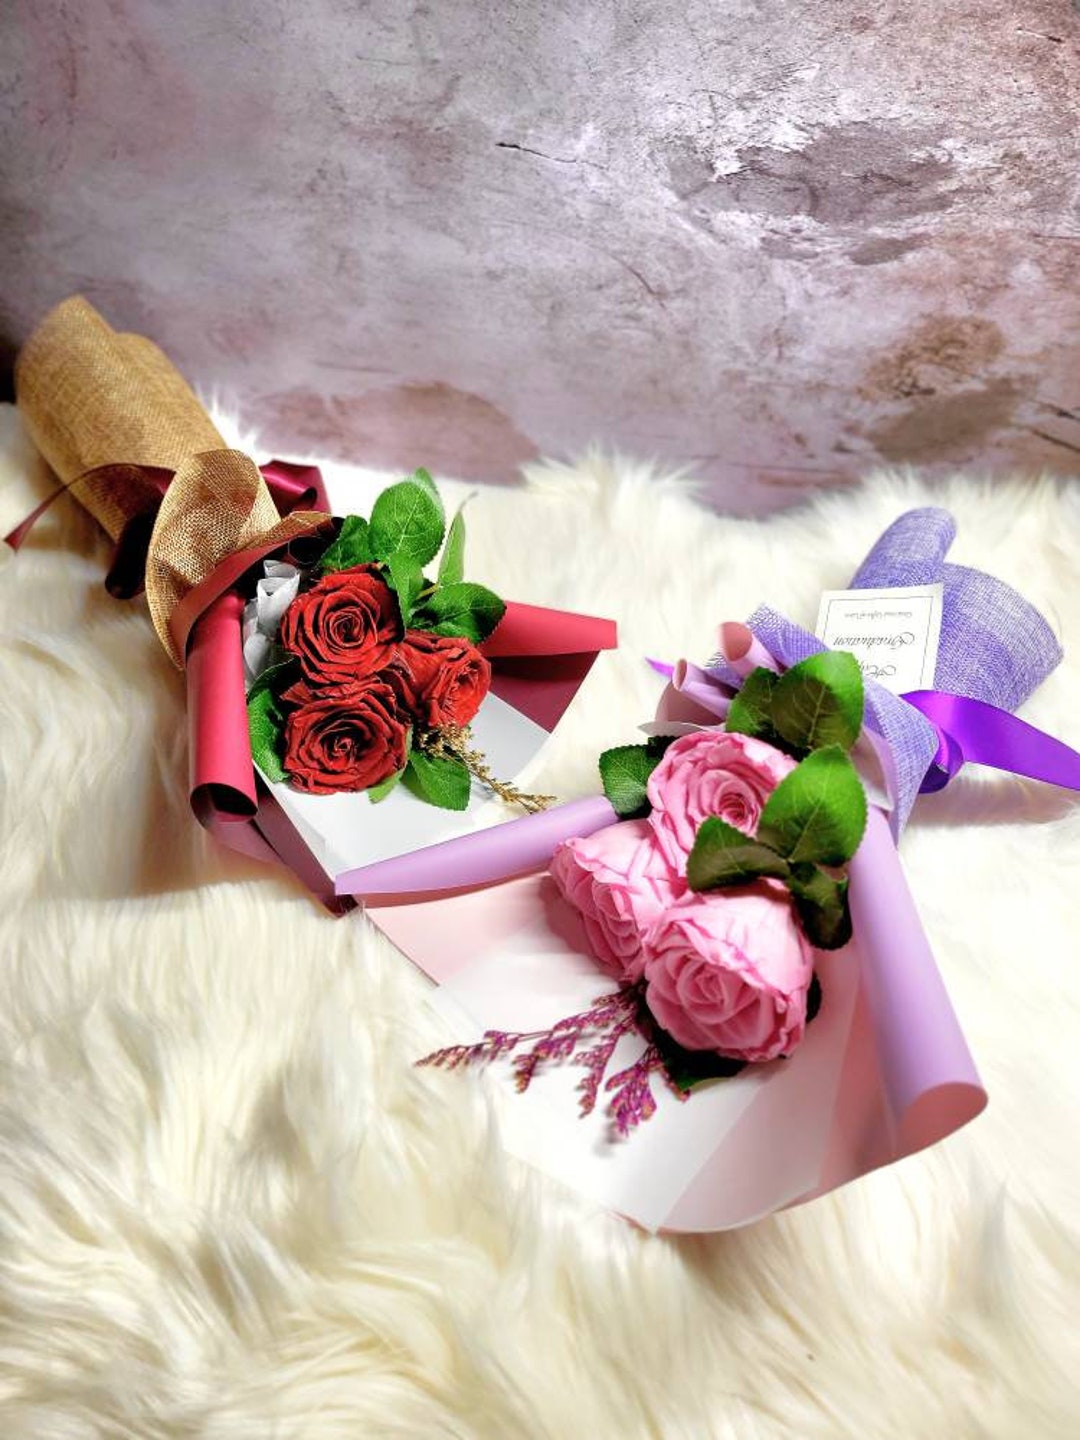 Regalo de rosas de aniversario para ella, regalos de rosas útiles